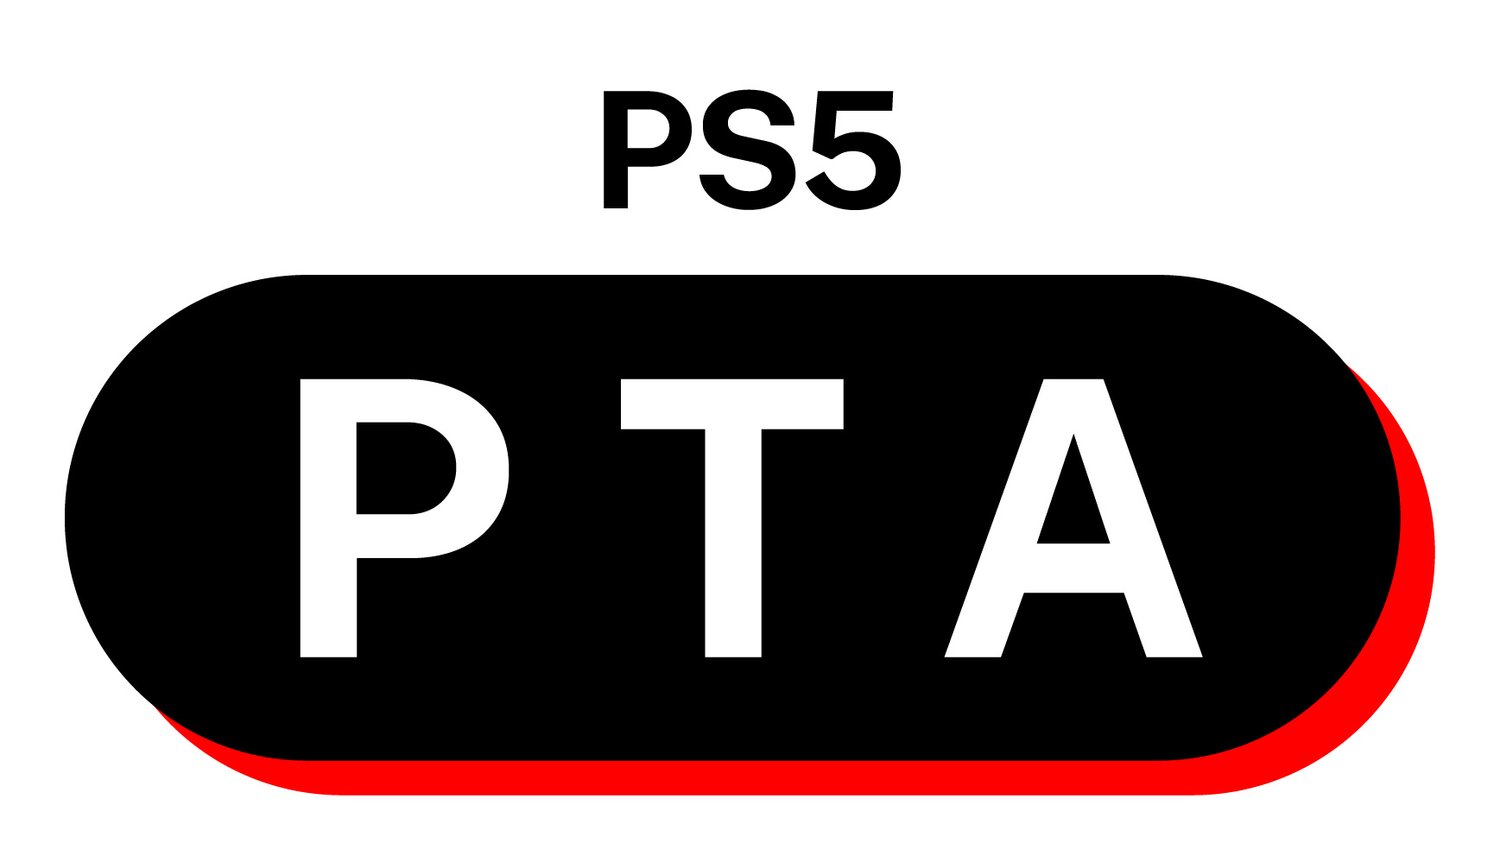 PS5 PTA